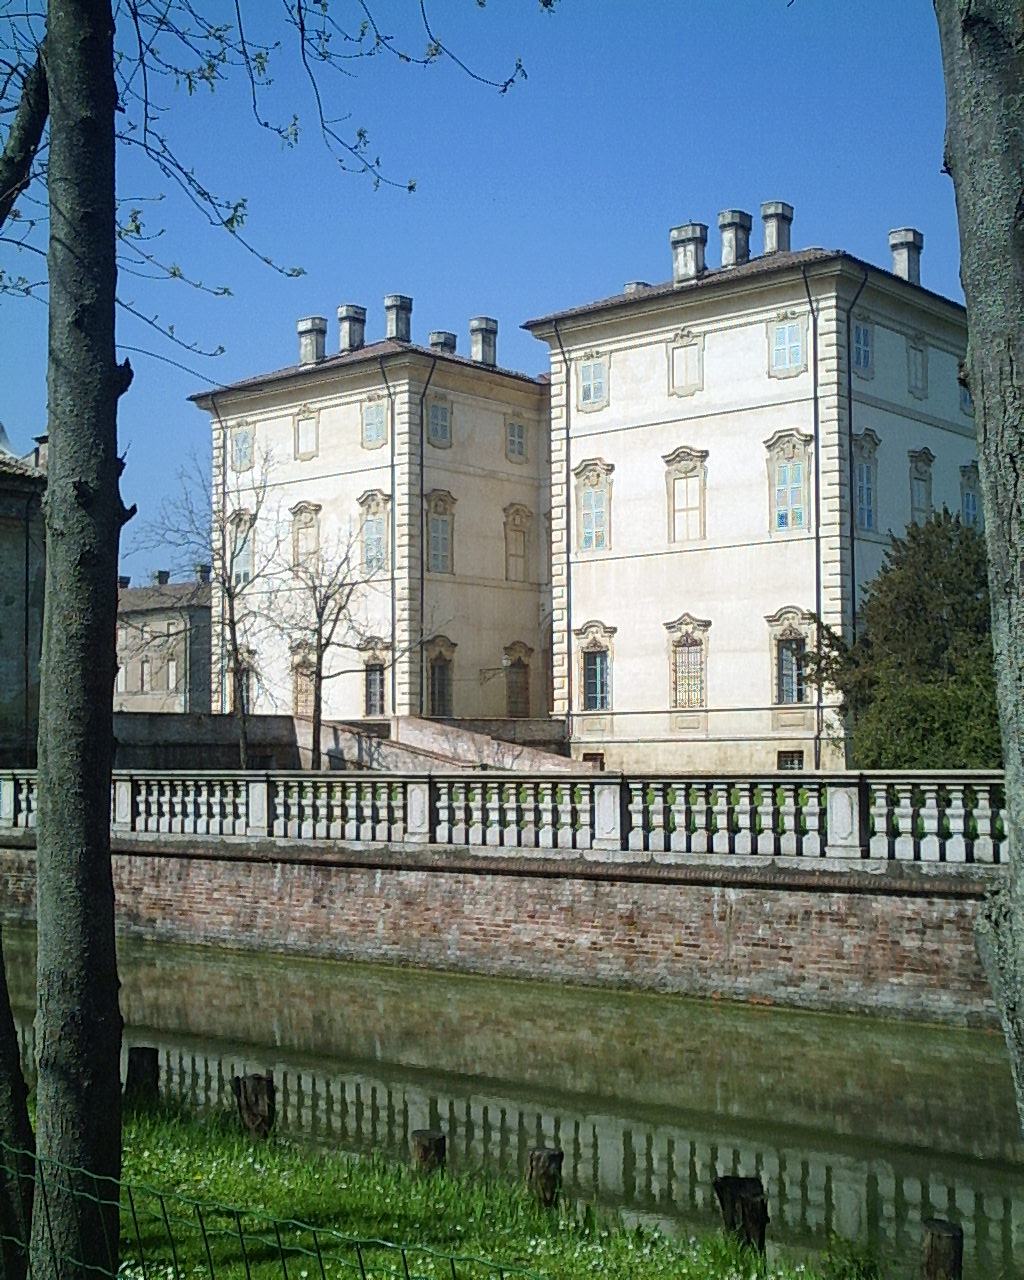 foto: https://upload.wikimedia.org/wikipedia/commons/1/1c/Villa_Pallavicino_2005_scorcio.JPG